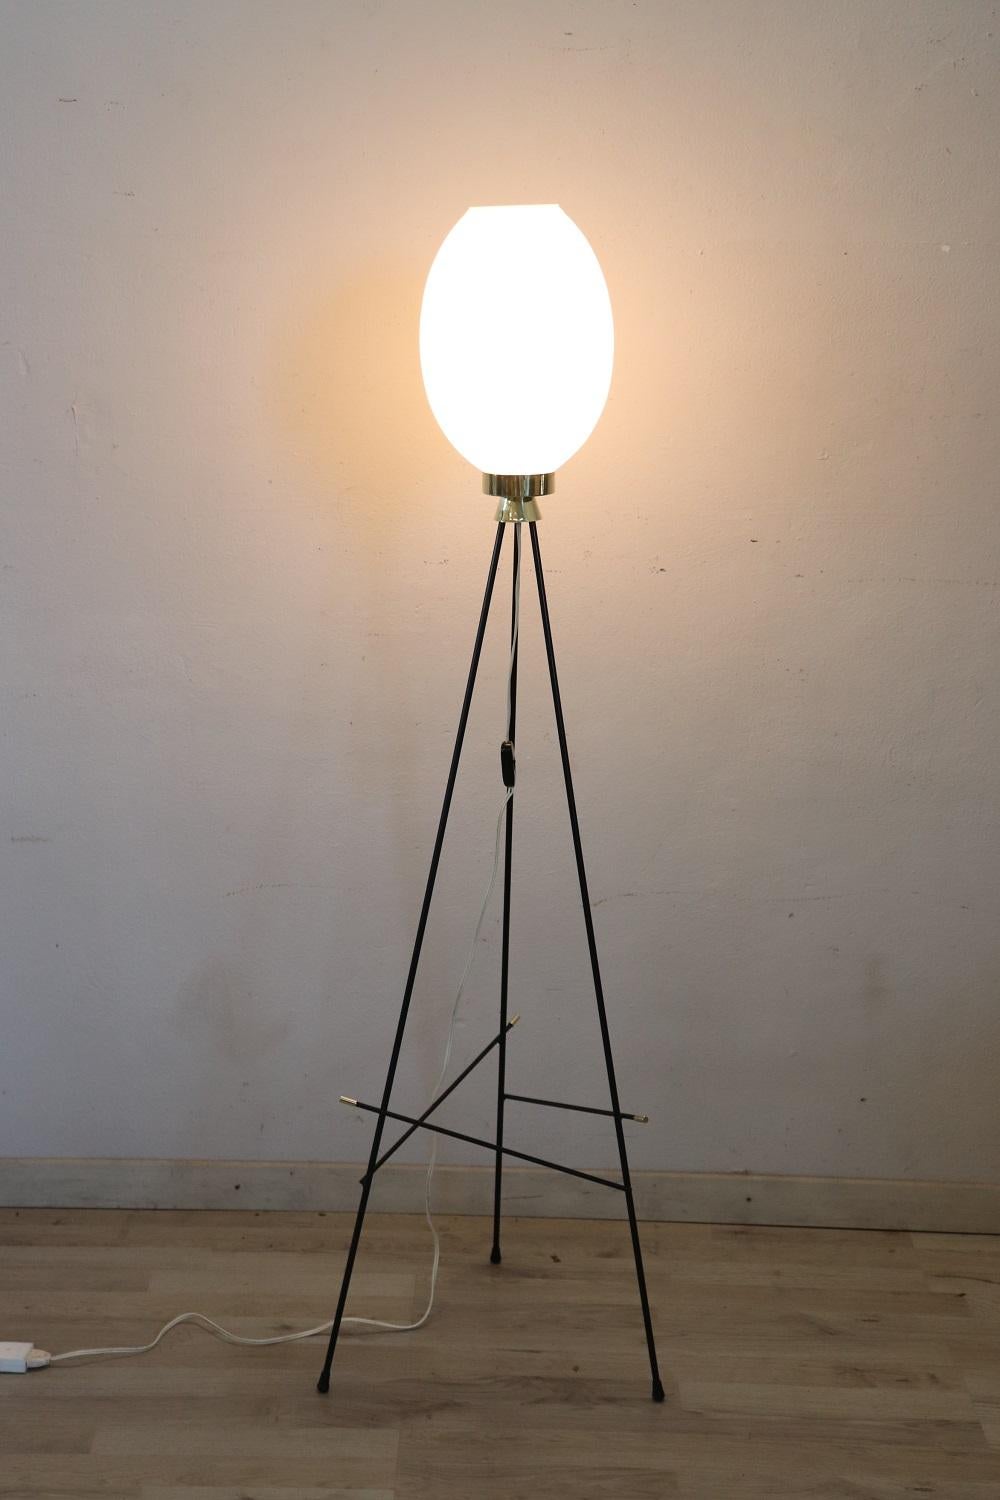 Magnifique lampadaire de style Stilnovo, design italien, années 1950. Lampe tyrpod caractérisée par un abat-jour en verre opalin blanc, une structure métallique peinte en noir et des détails en laiton doré. Magnifique pour un environnement moderne